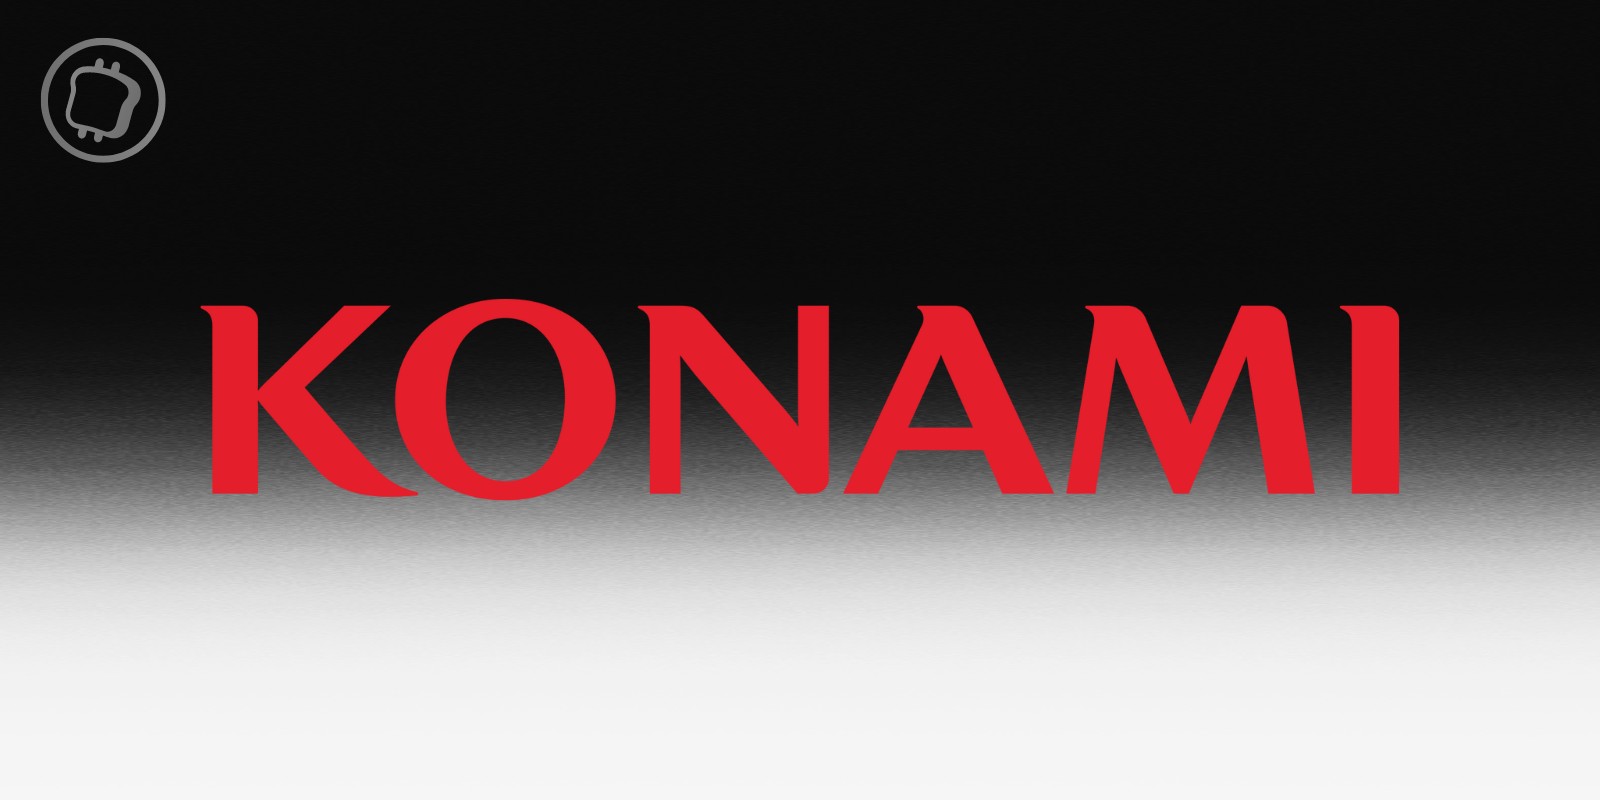 Le géant du jeu vidéo Konami lance sa solution NFT « Resella » sur Avalanche – De quoi s'agit-il ?